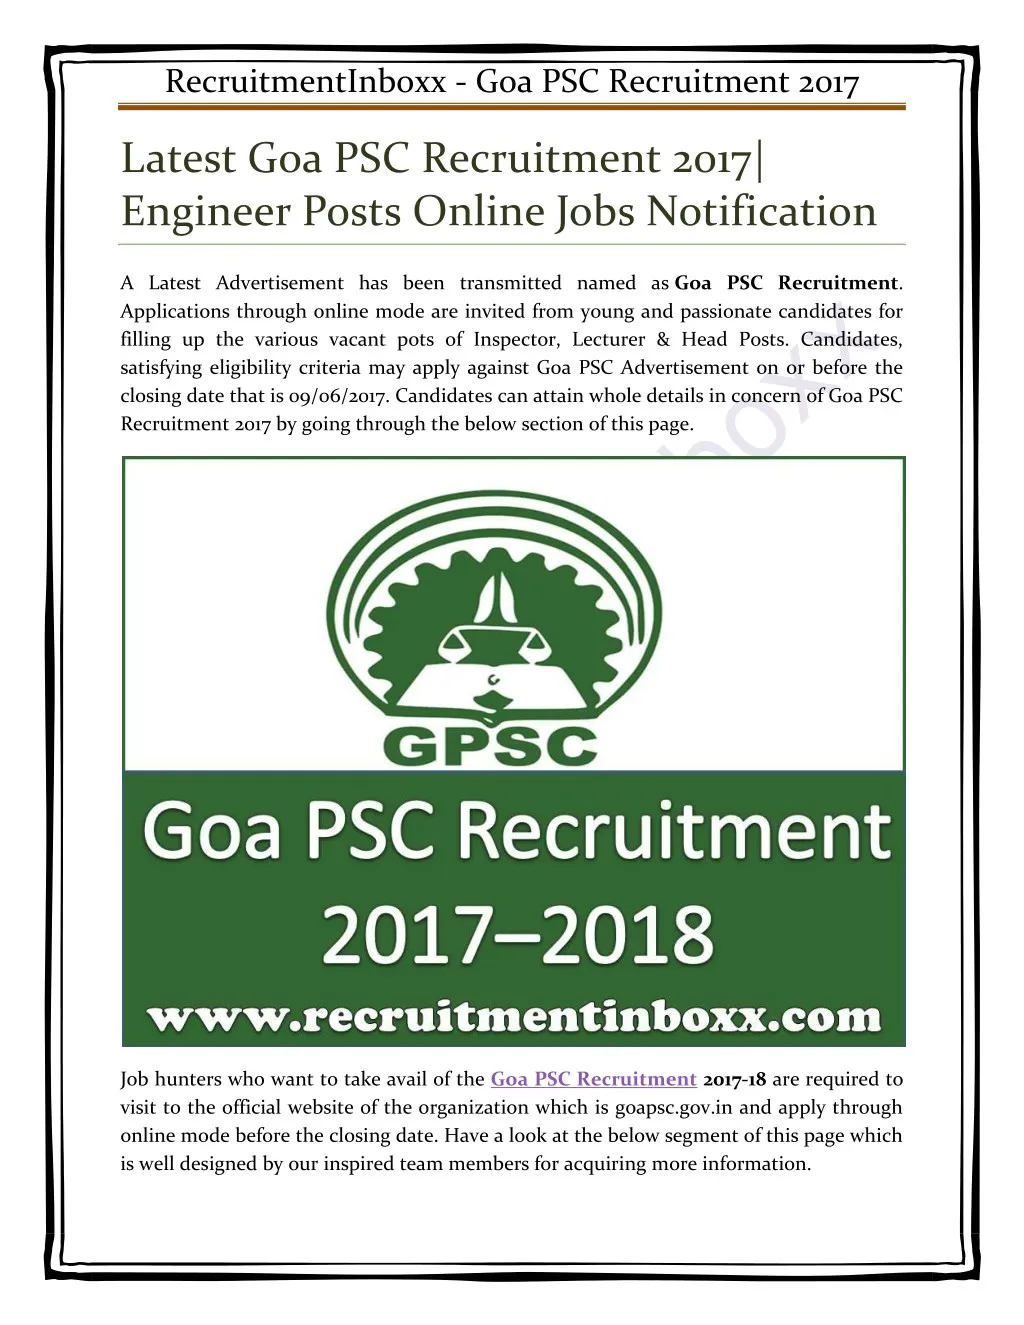 recruitmentinboxx goa psc recruitment 2017